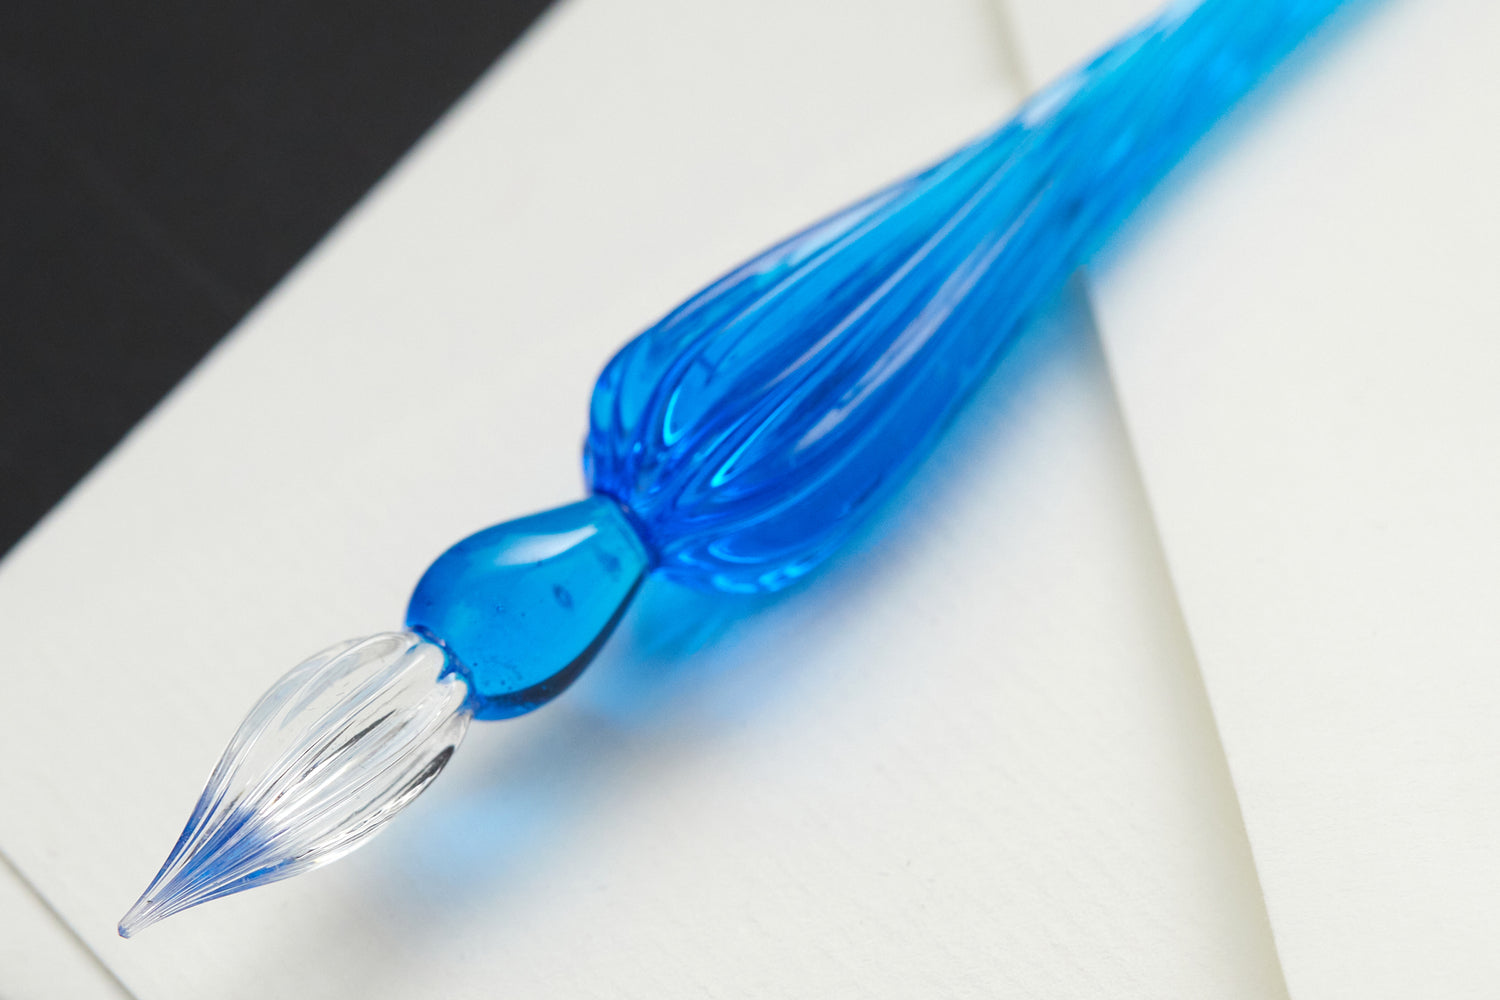 J. Herbin Glass Dip Pen Review — A Better Desk